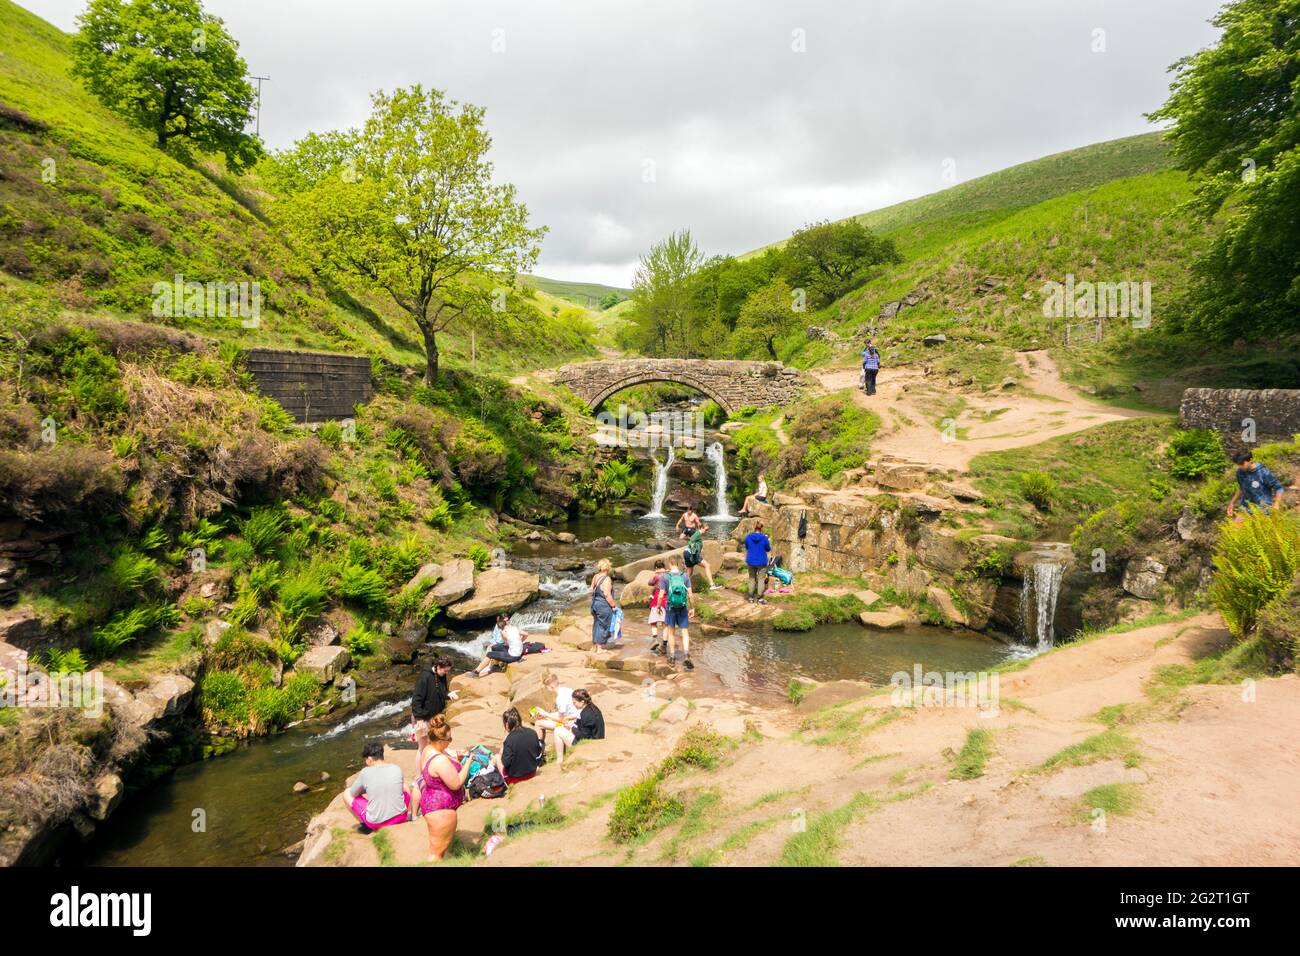 Leute, die im Fluss Dane am Three Shires Head, wo Cheshire, Derbyshire und Staffordshire im Peak District aufeinandertreffen, Picknicken und schwimmen Stockfoto